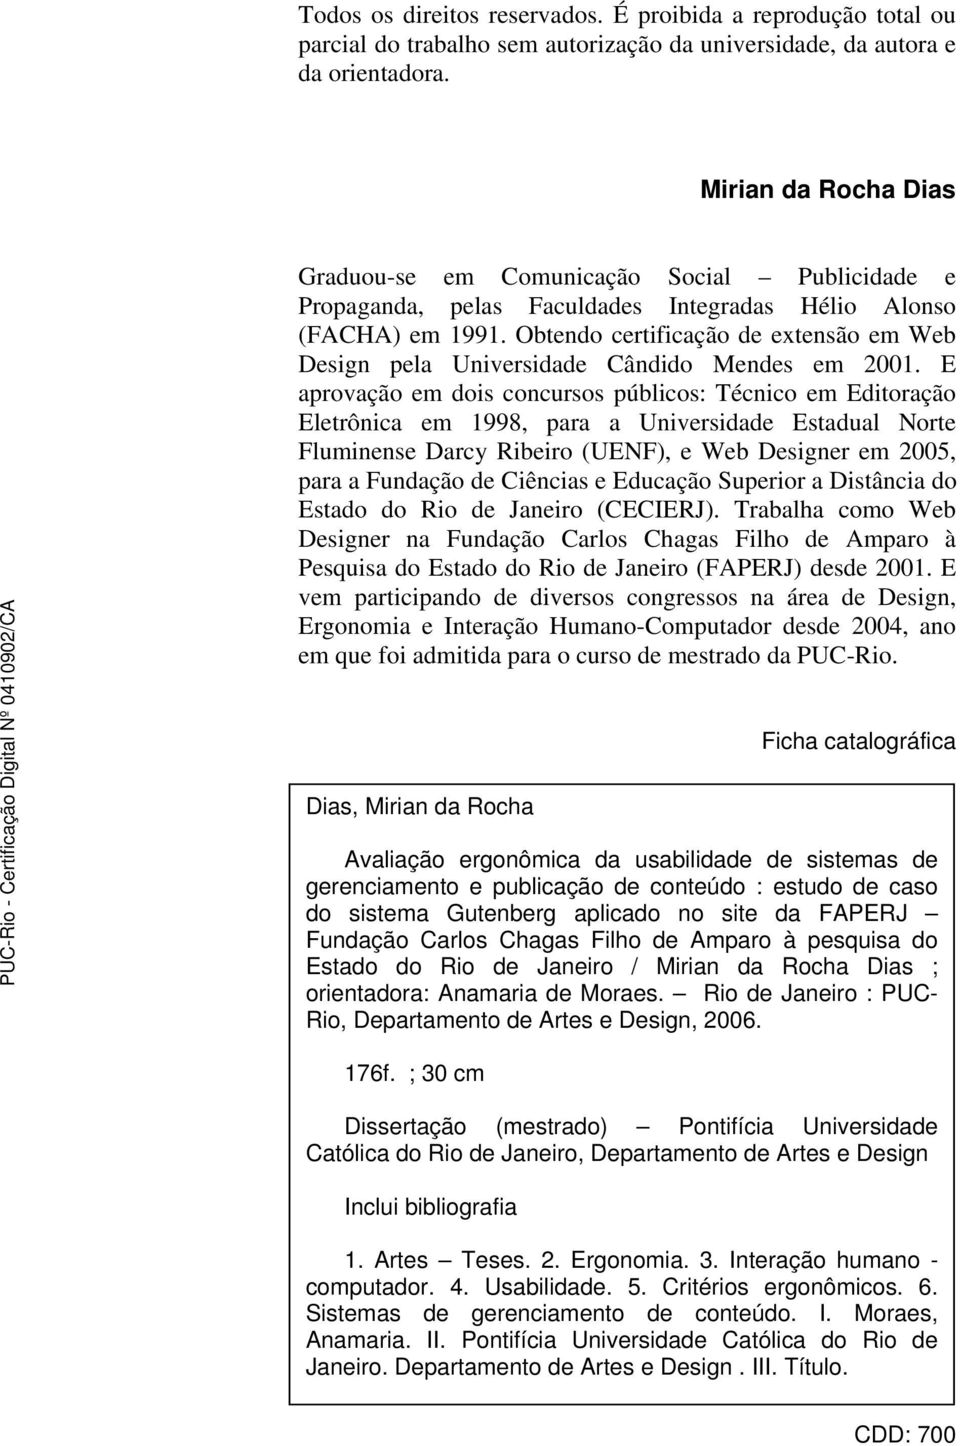 Obtendo certificação de extensão em Web Design pela Universidade Cândido Mendes em 2001.